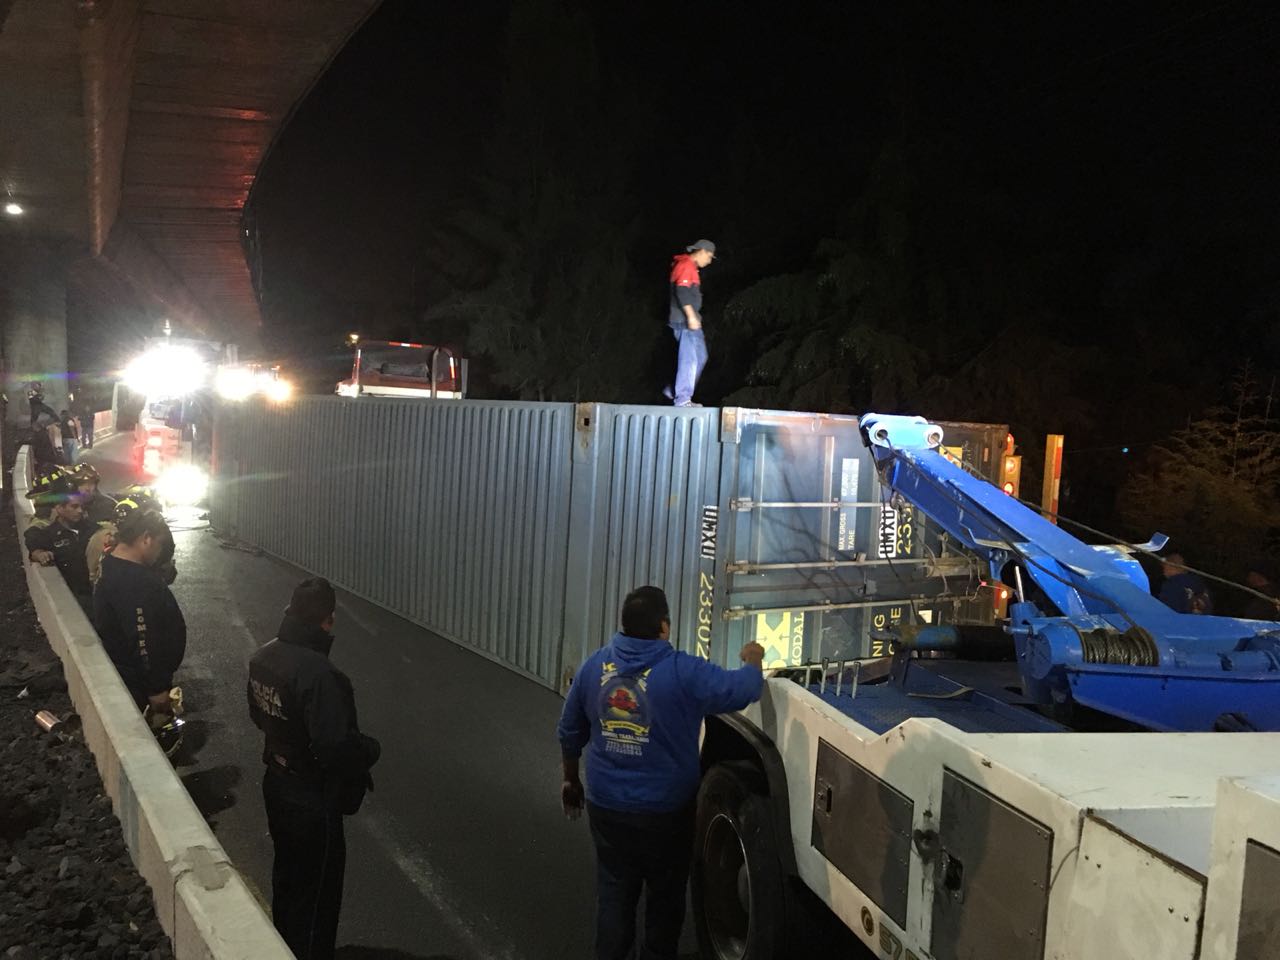 Cierran circulación en autopista Cuernavaca-México por volcadura de contenedor de tráiler